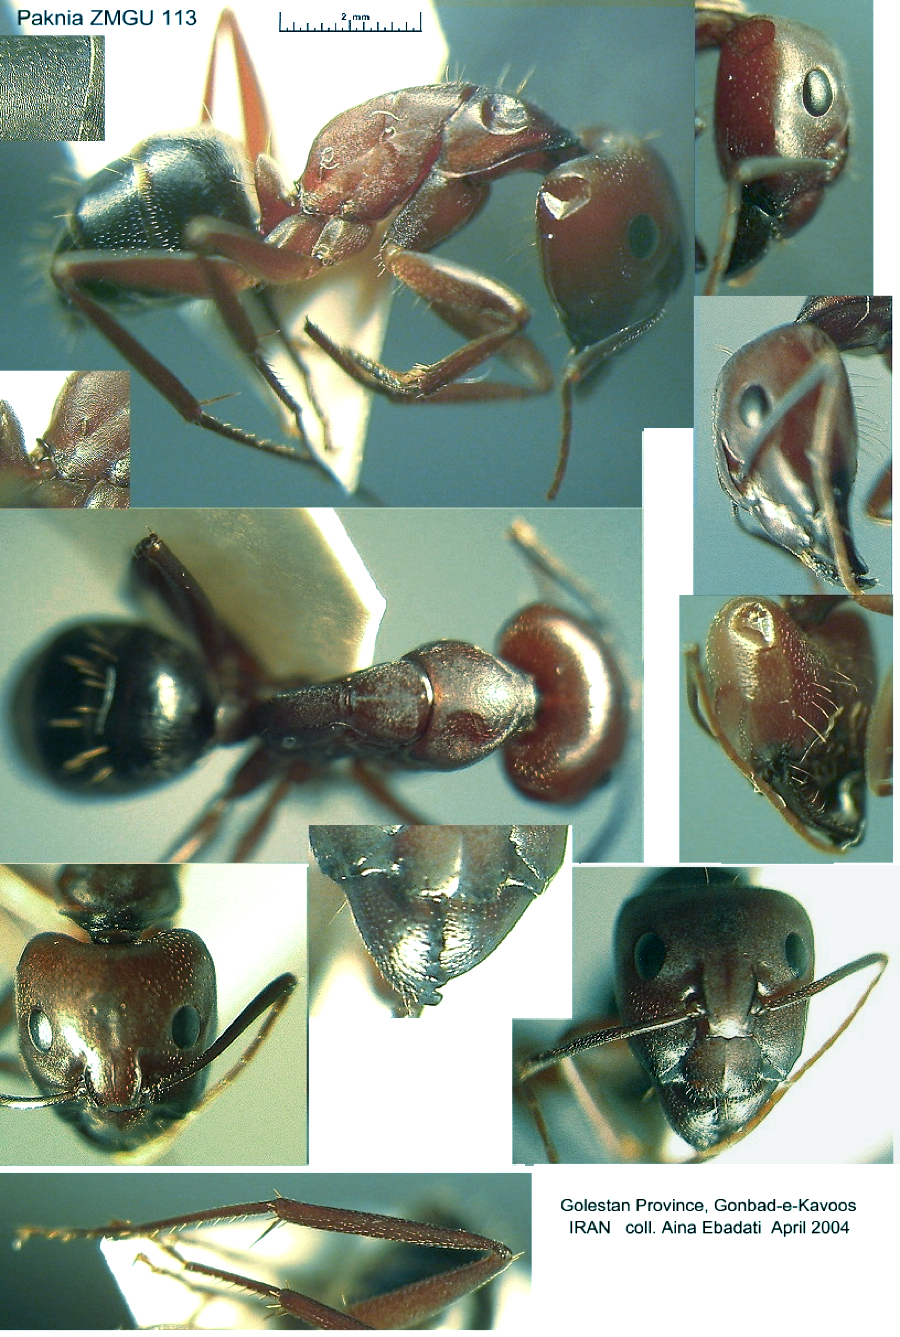 {Camponotus (Myrmosericus) cruentatus}